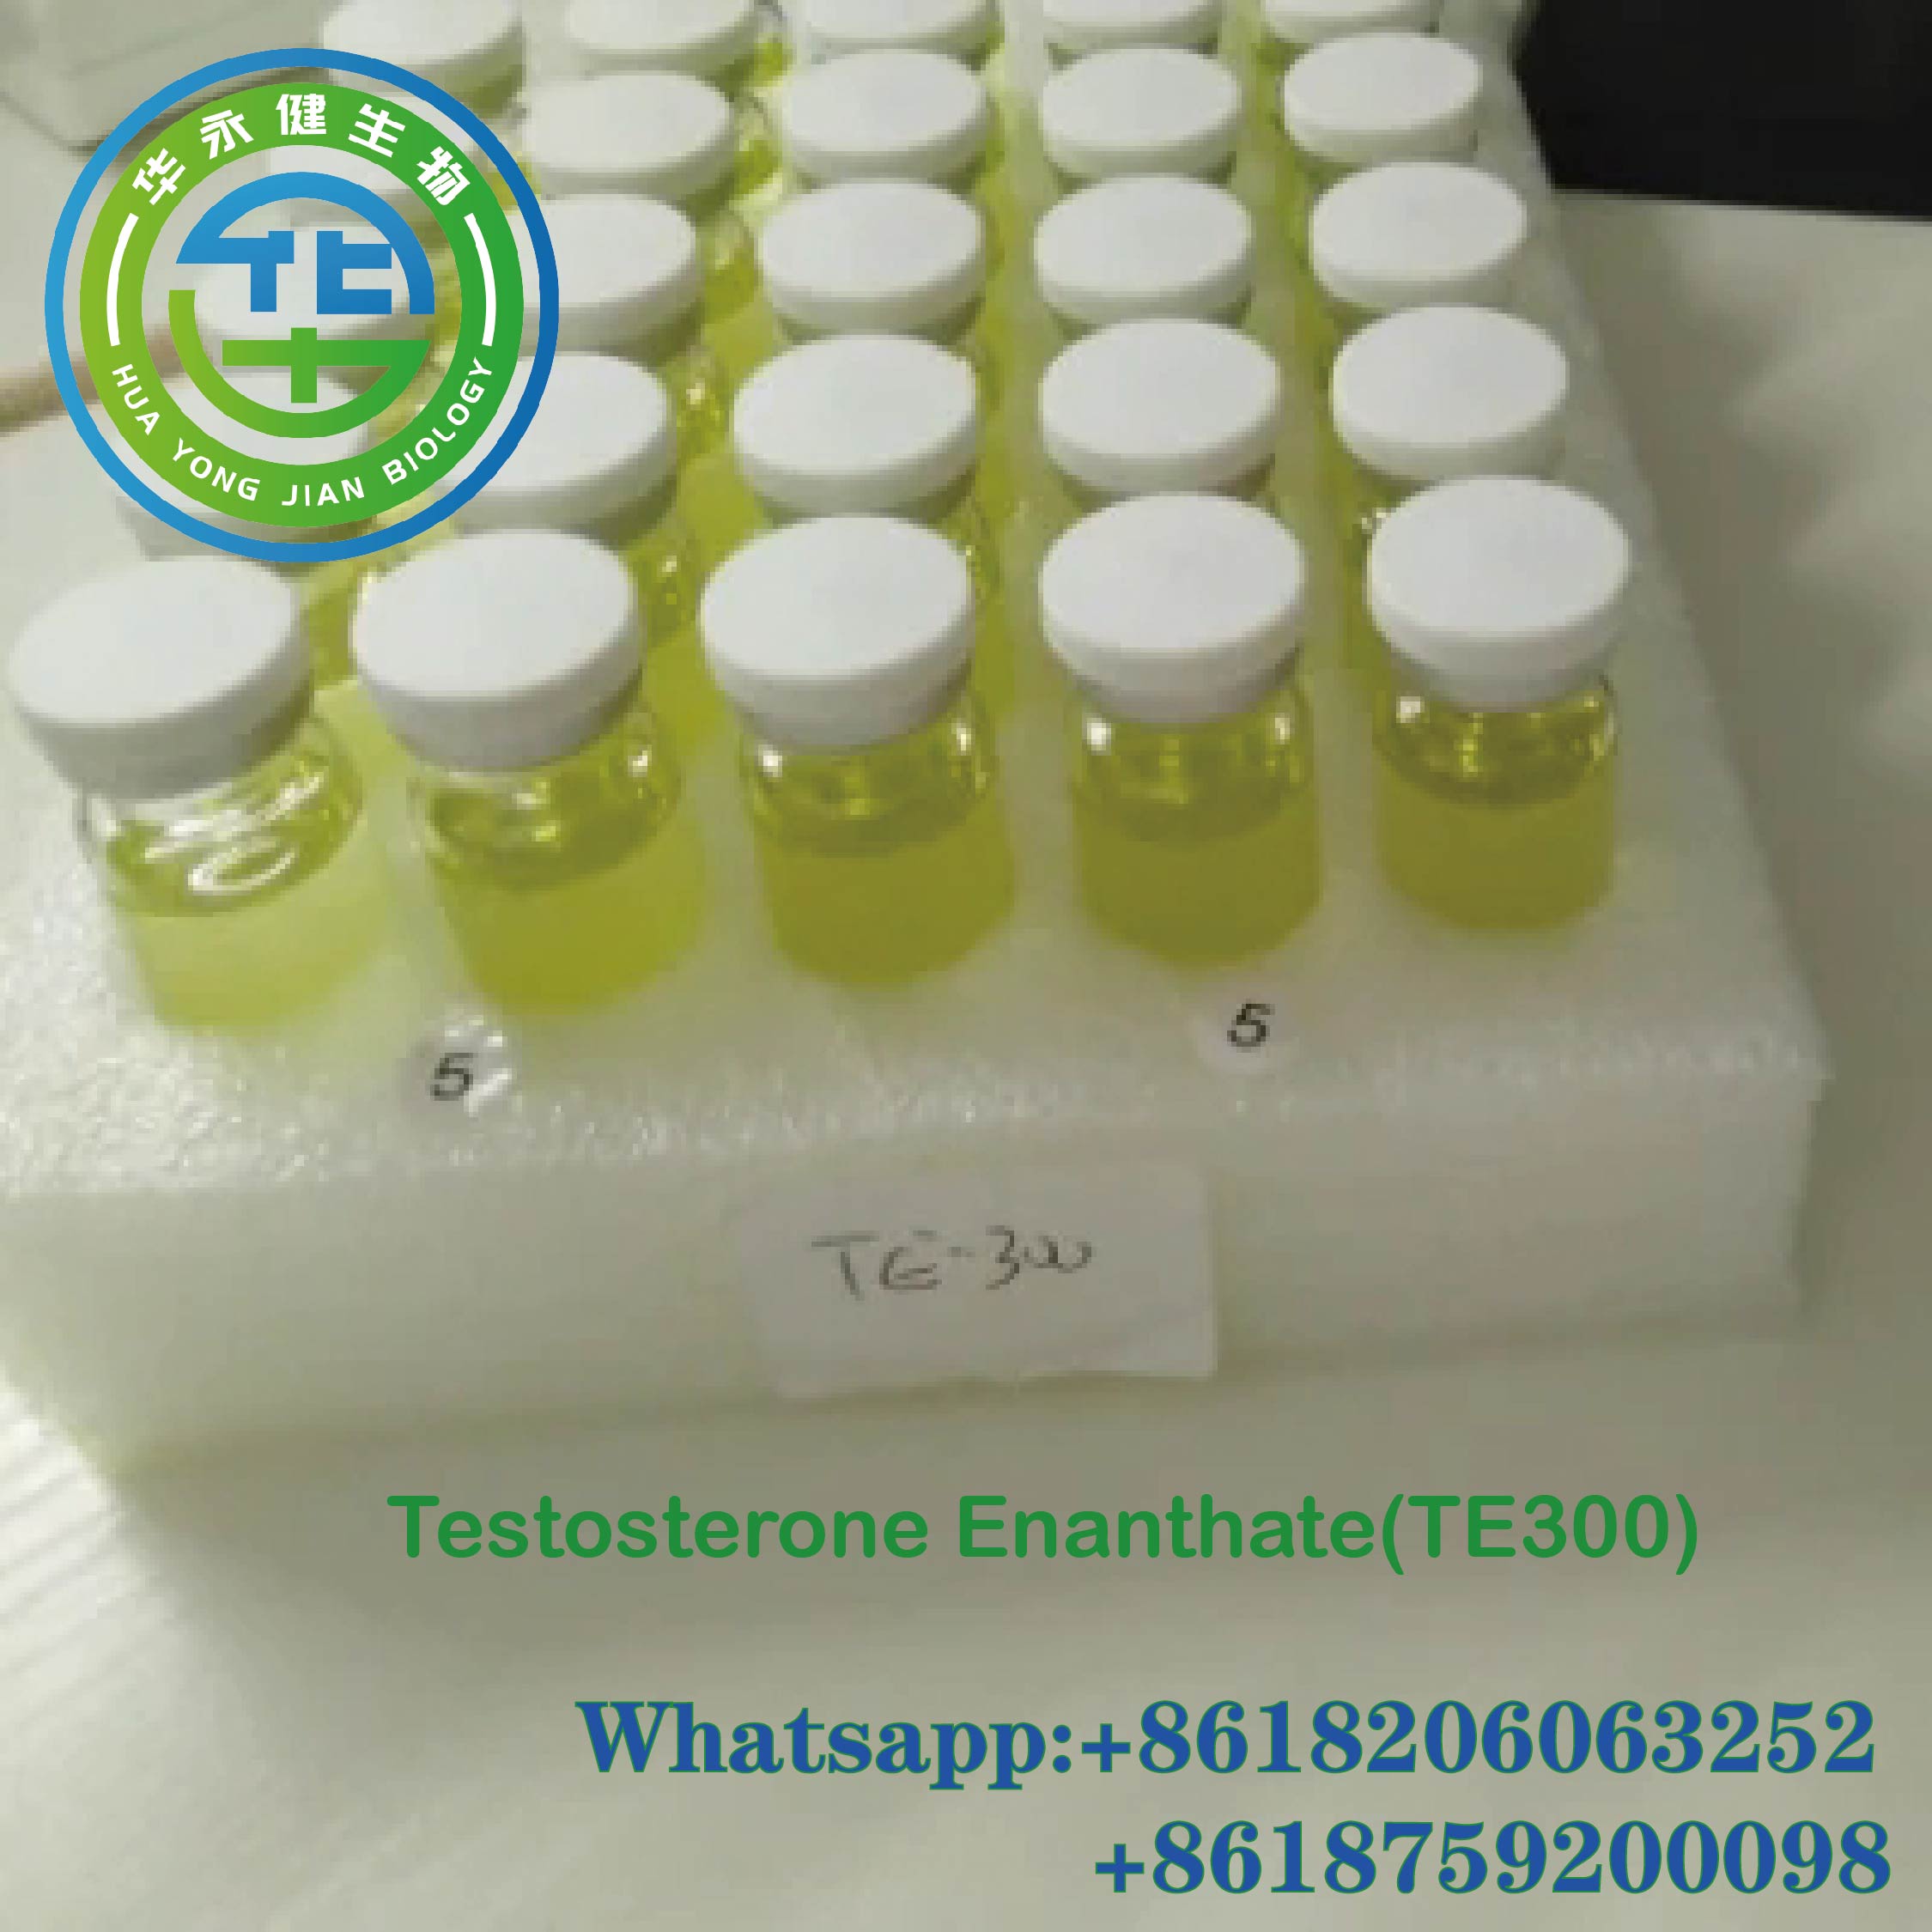 ऑइल इंजेक्टेबल टेस्टोस्टेरॉन एनन्थेट 300 अॅनाबॉलिक स्टिरॉइड्स टेस्ट E 300mg/ml वजन कमी करण्यासाठी वैशिष्ट्यीकृत इमेज